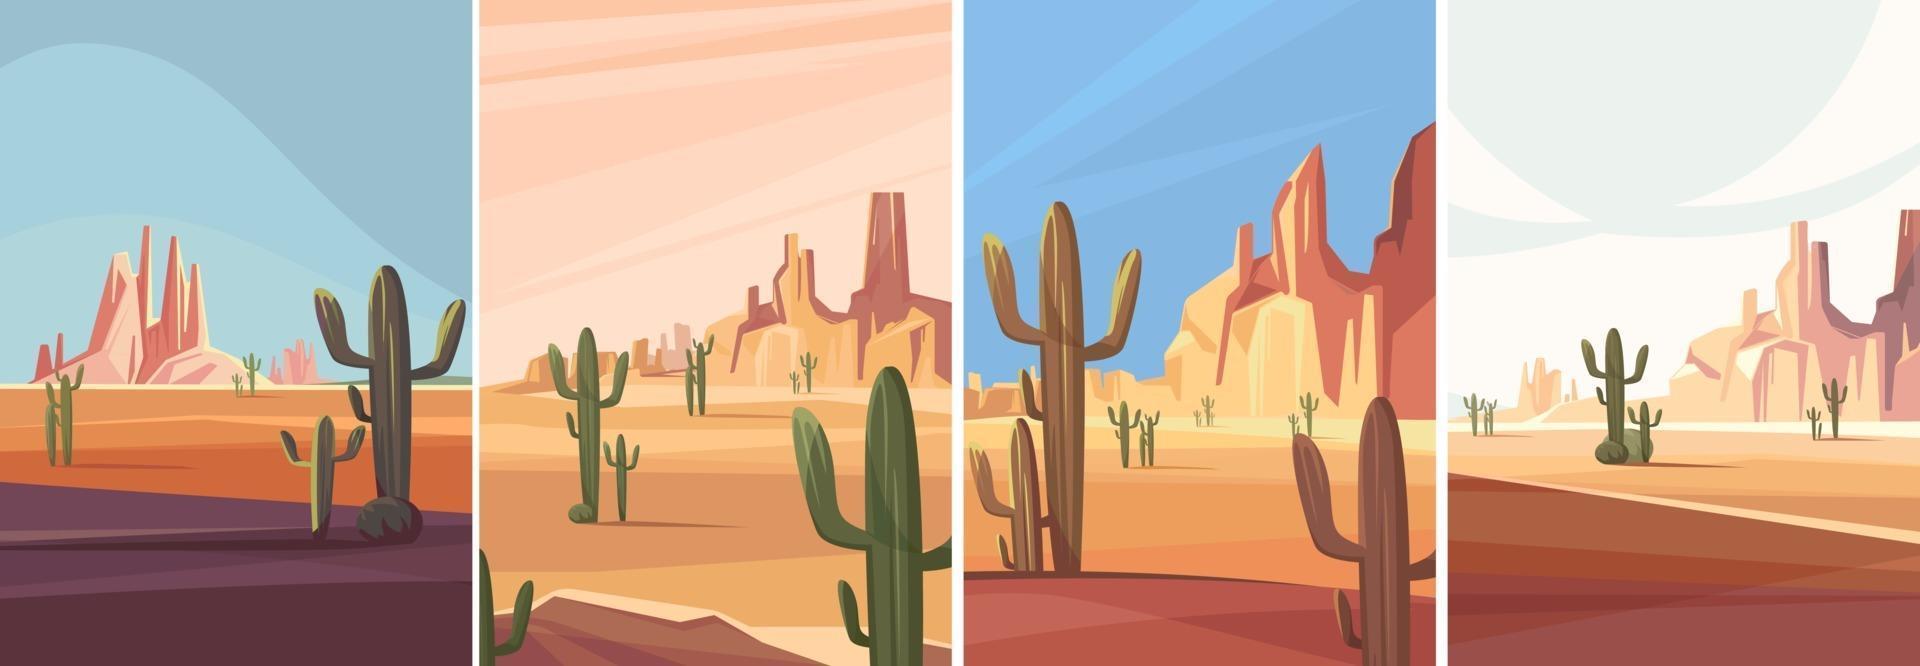 Sammlung von Arizona Wüsten vektor